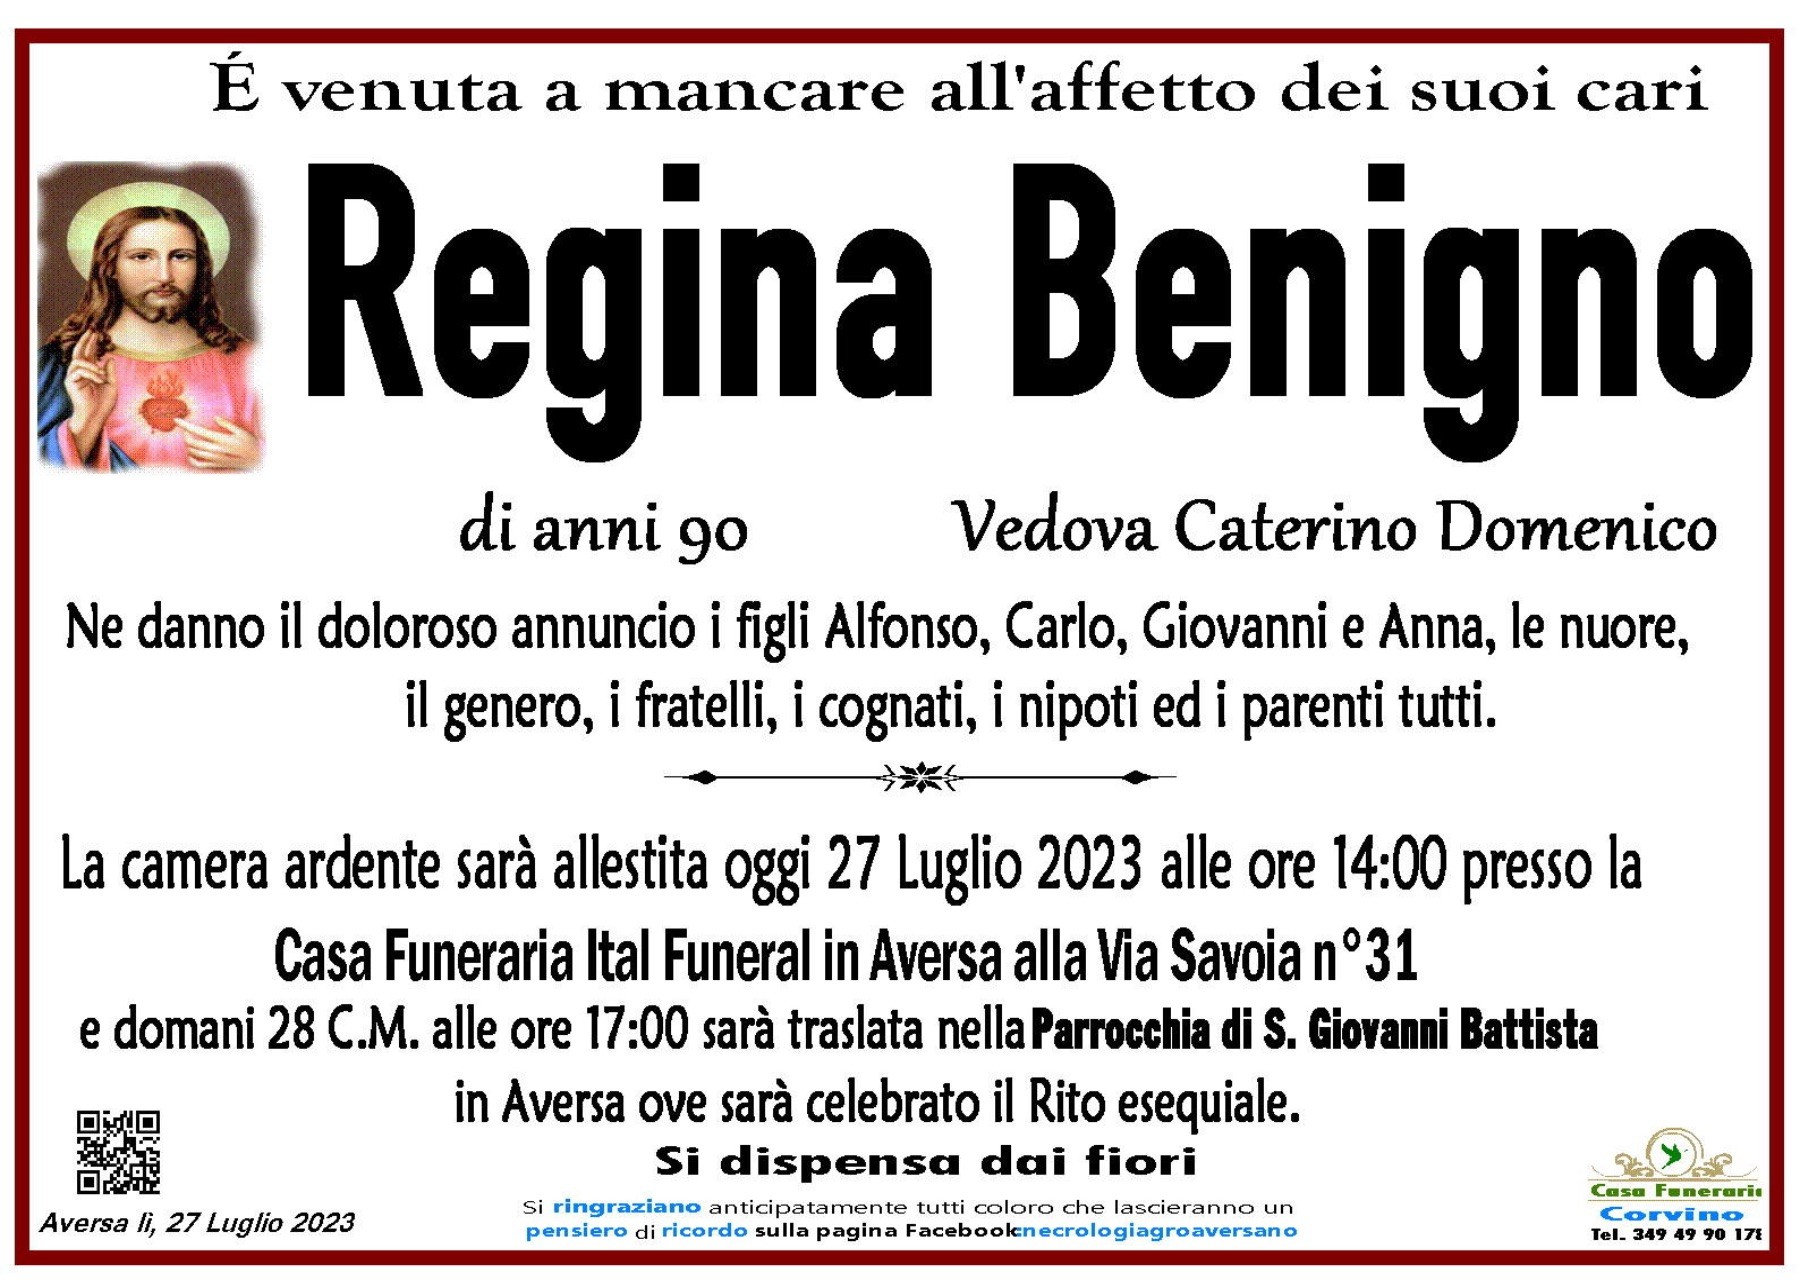 Regina Benigno